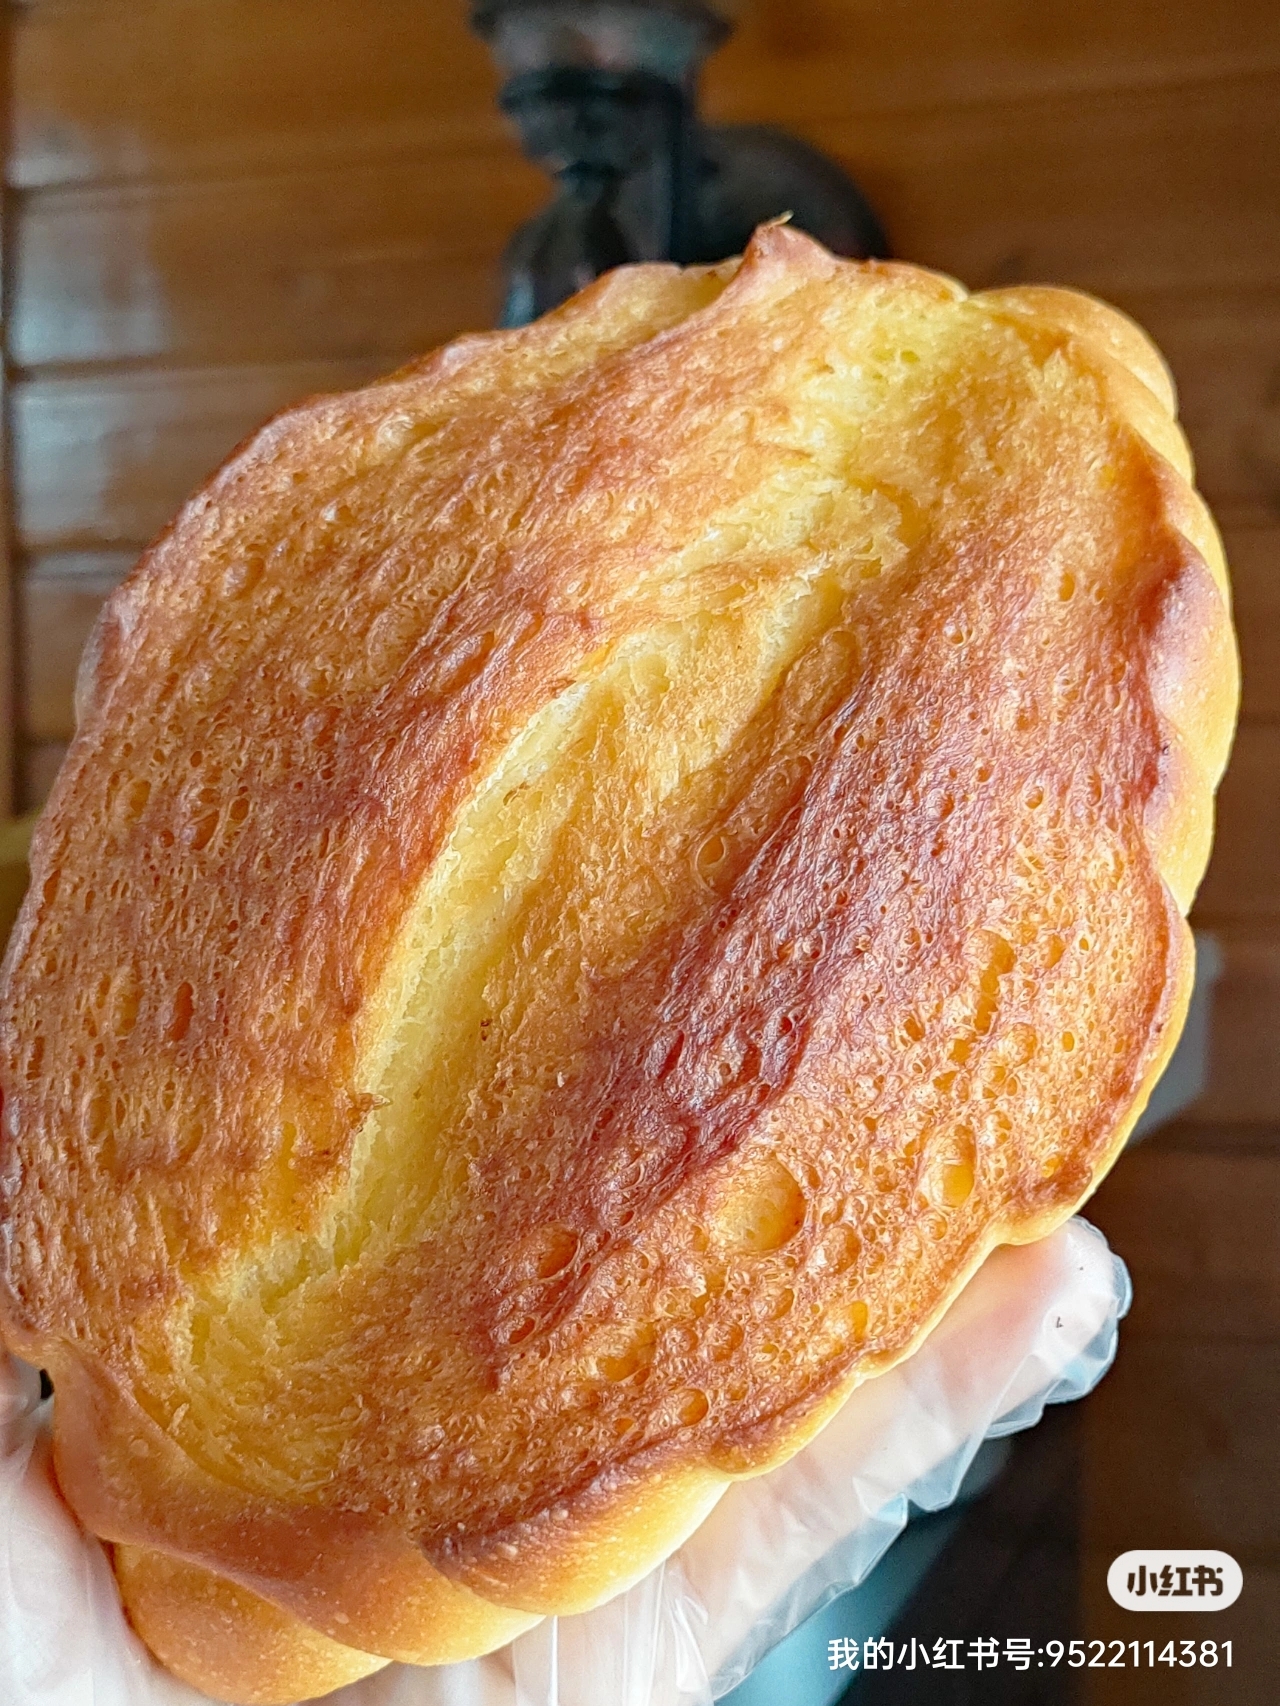 嘎嘎香~战斗民族的罗宋面包的做法